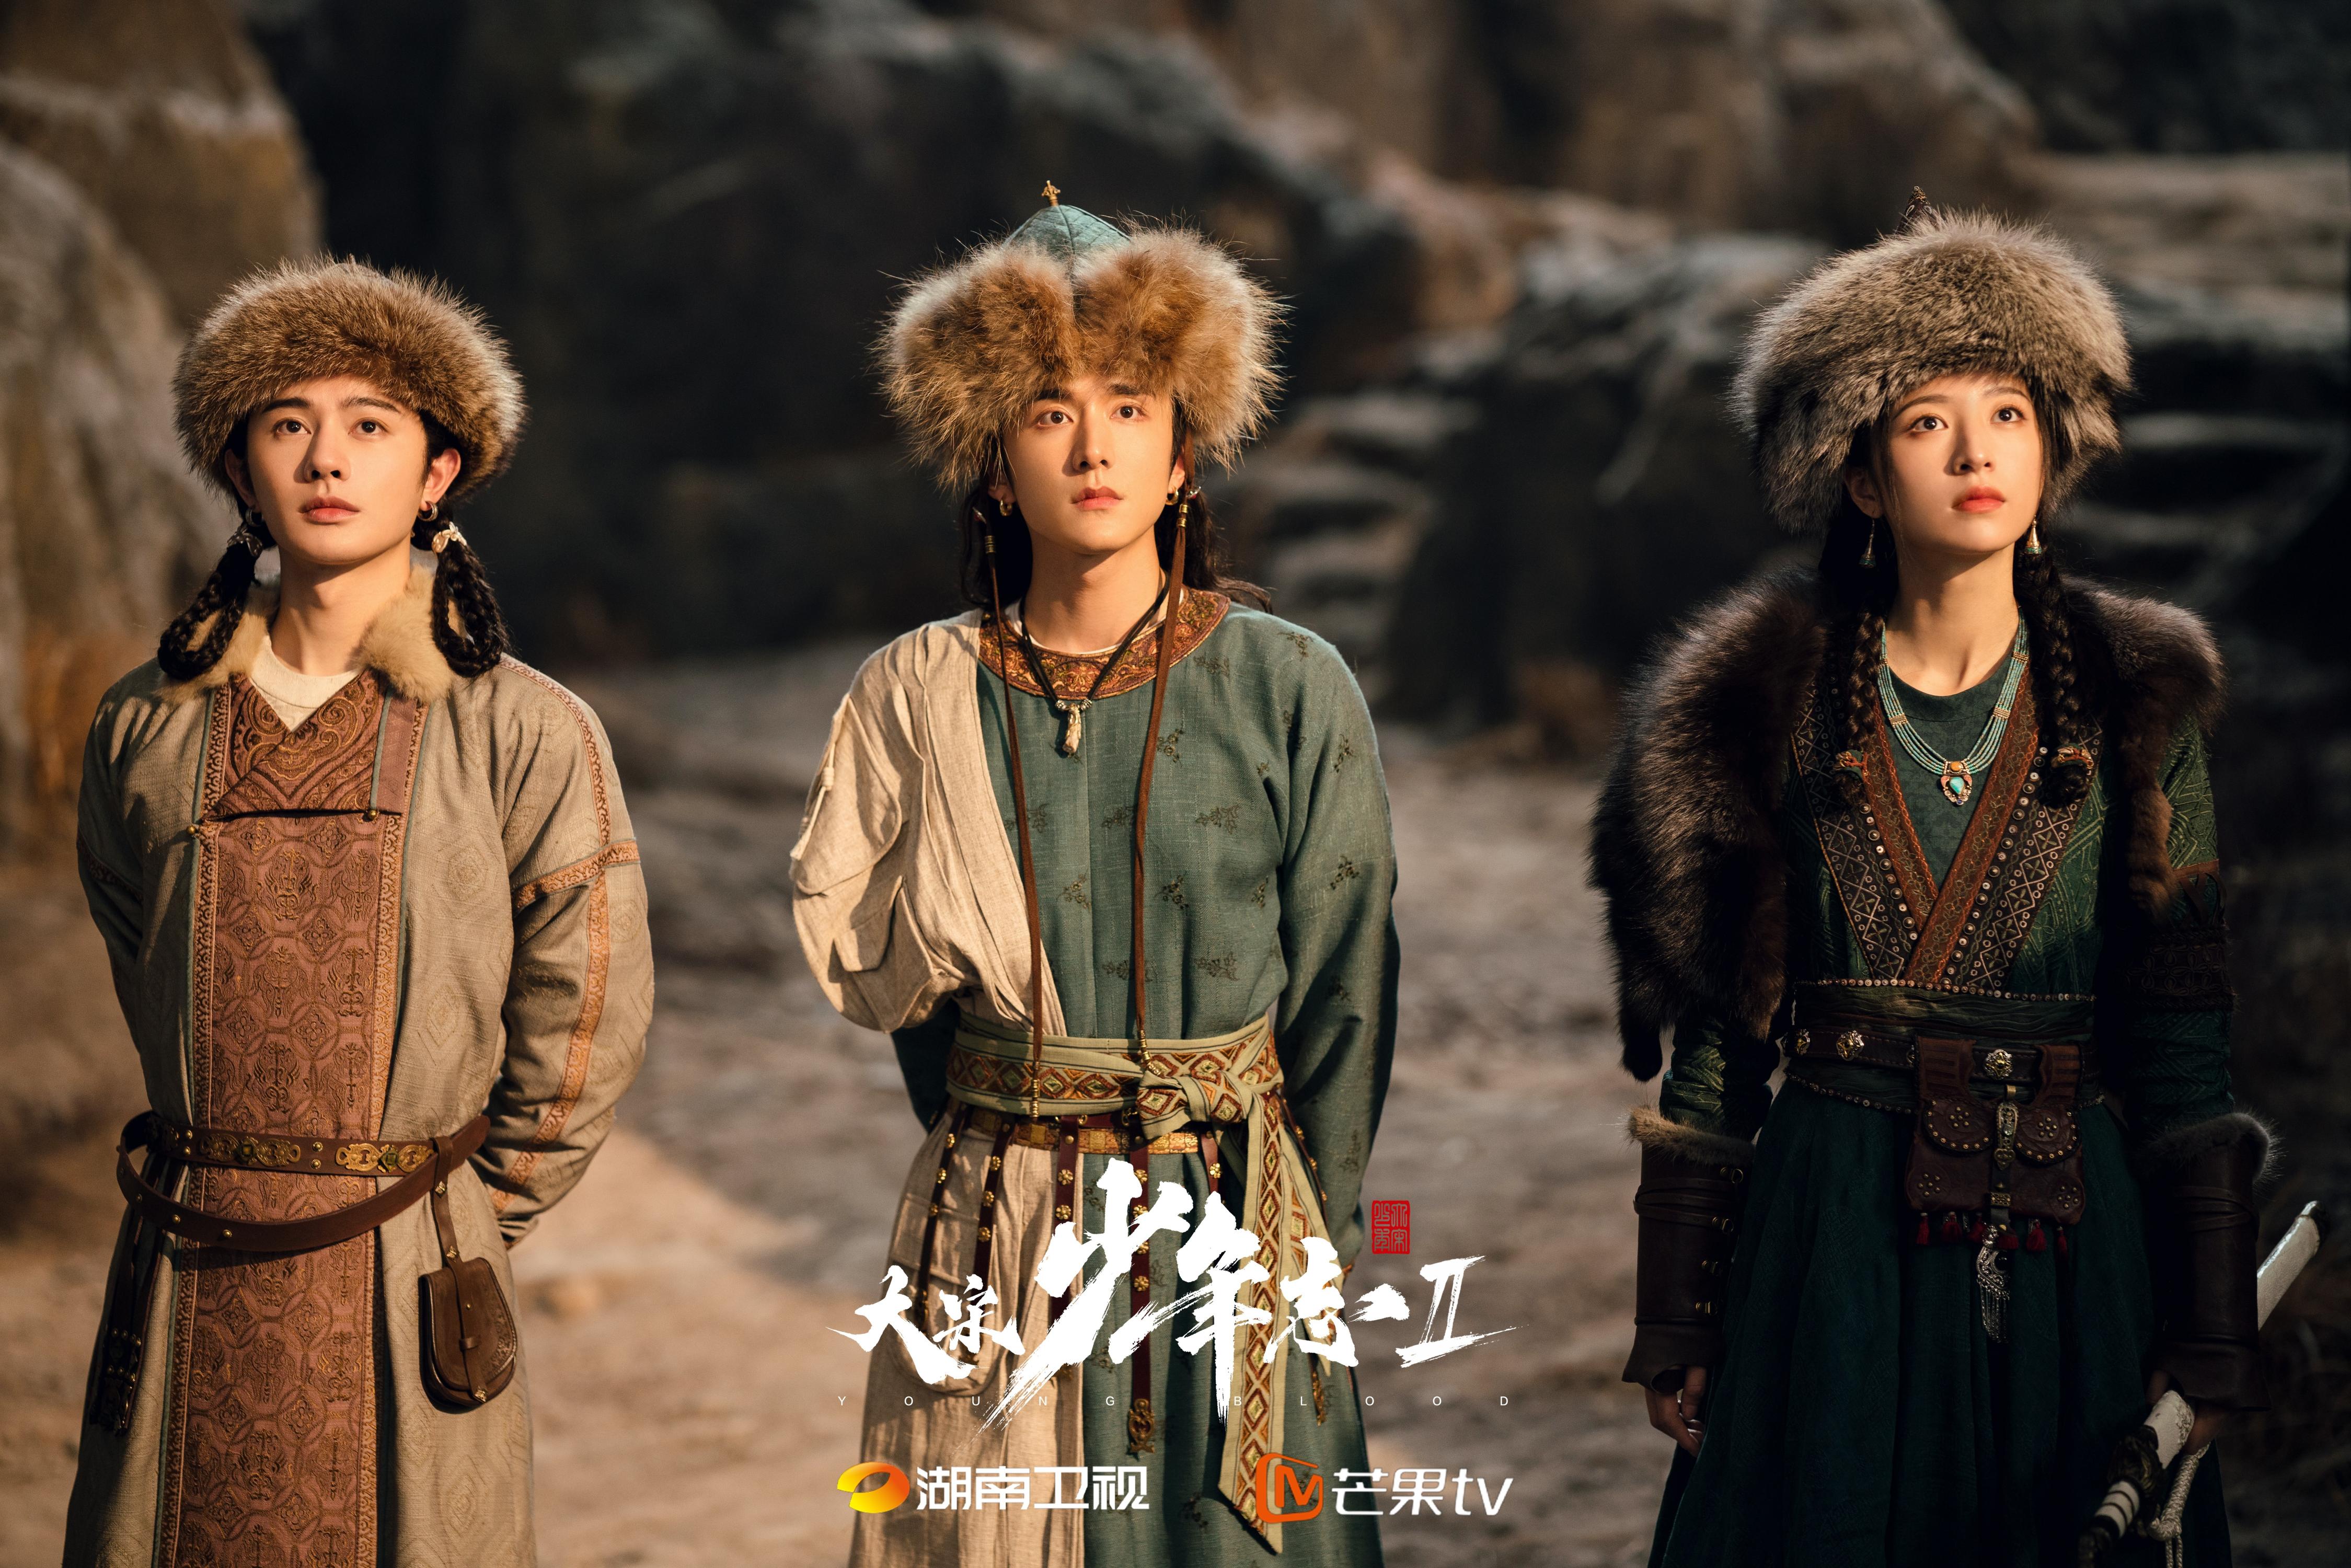 รีวิว สายลับสุดป่วนแห่งต้าซ่ง 2 / Young Blood 2 (2023) ซีรีส์จีนแนวสายลับ เรื่องใหม่ นำแสดงโดย จางซินเฉิง โจวอวี่ถง 